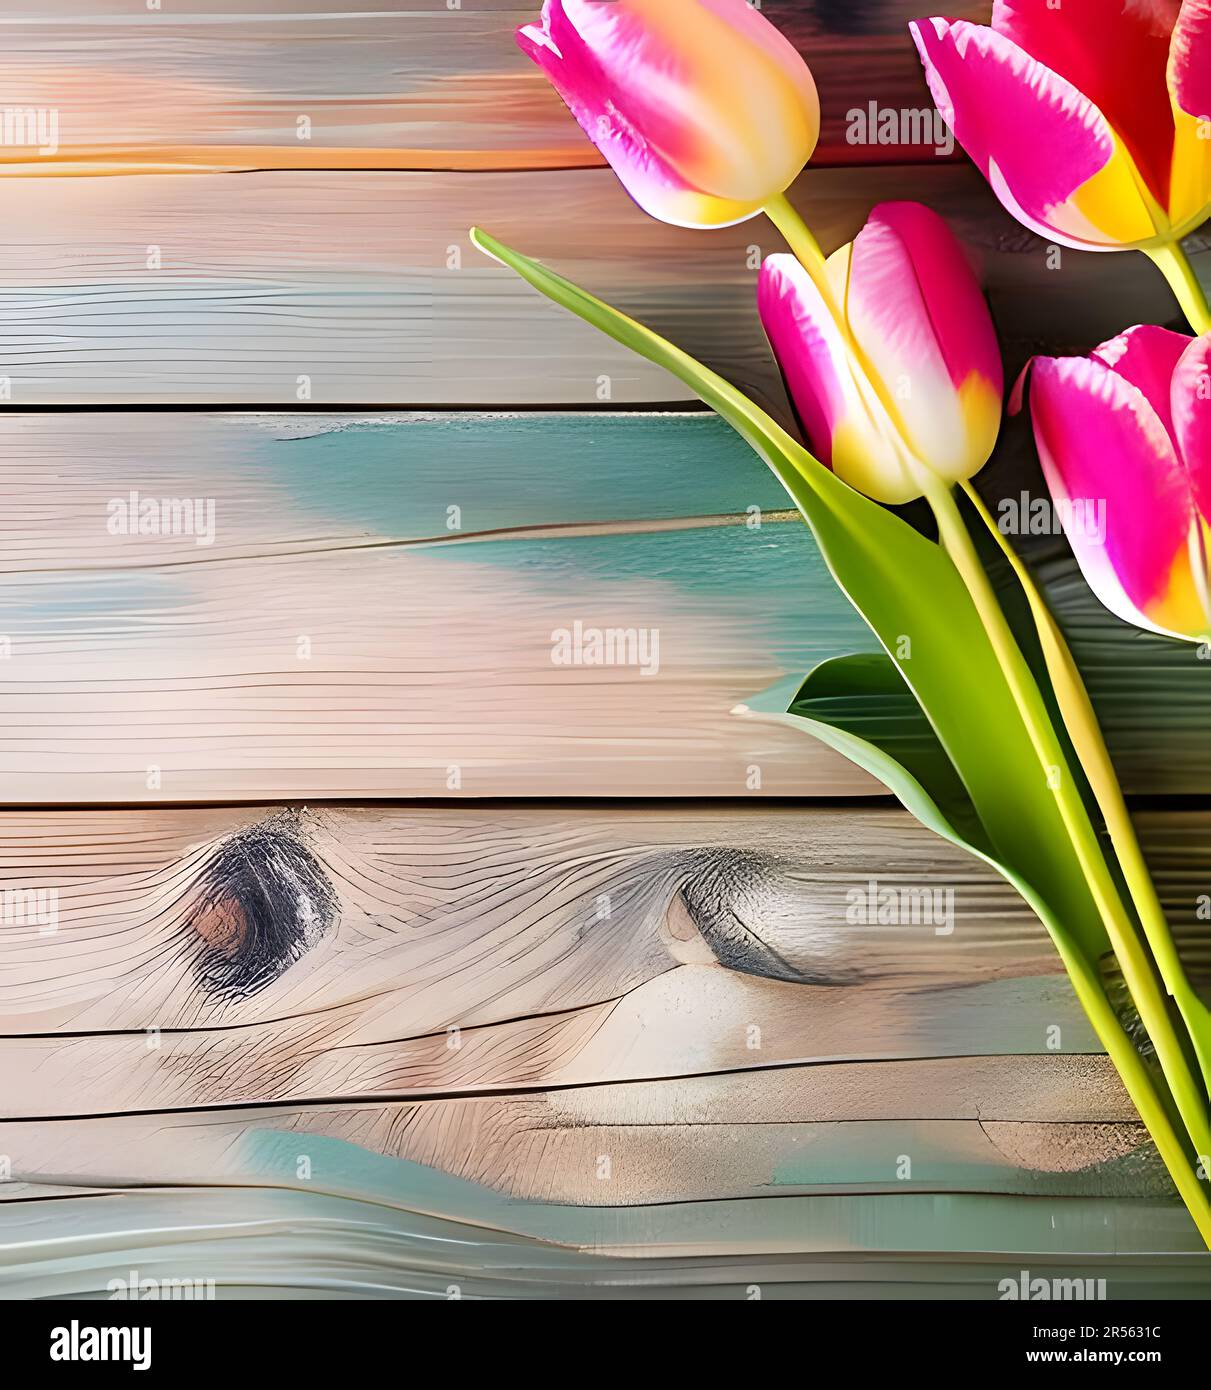 Vue en hauteur de quatre tulipes roses sur une table en bois Banque D'Images